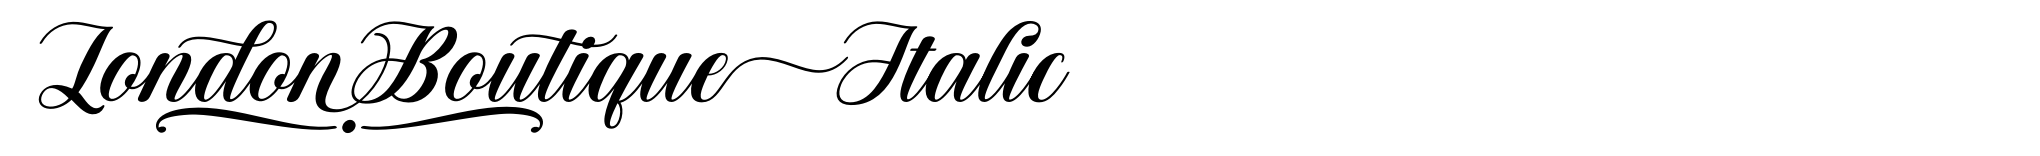 London Boutique Italic image